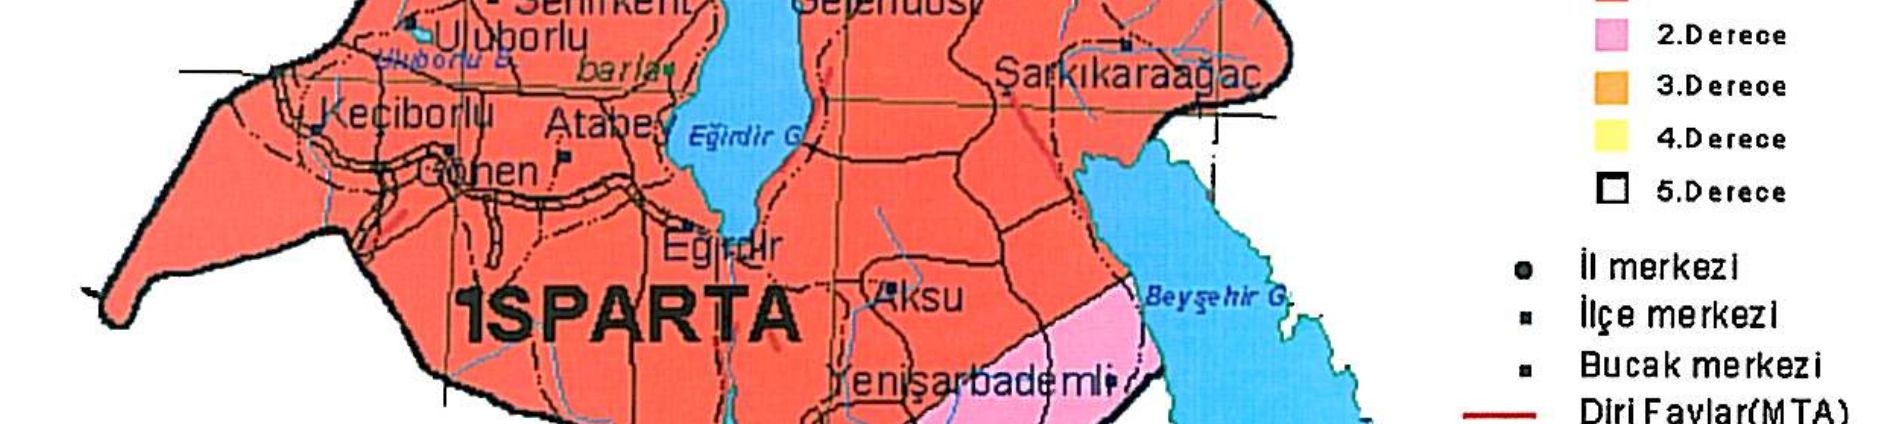 Şekil 2: Isparta deprem risk alanları Deprem kayıt istasyonlarının yetersizliği nedeniyle özellikle İl in güney ve doğu kesimlerinde yer hareketlerinin ve depremlerin sağlıklı izlenmesi mümkün